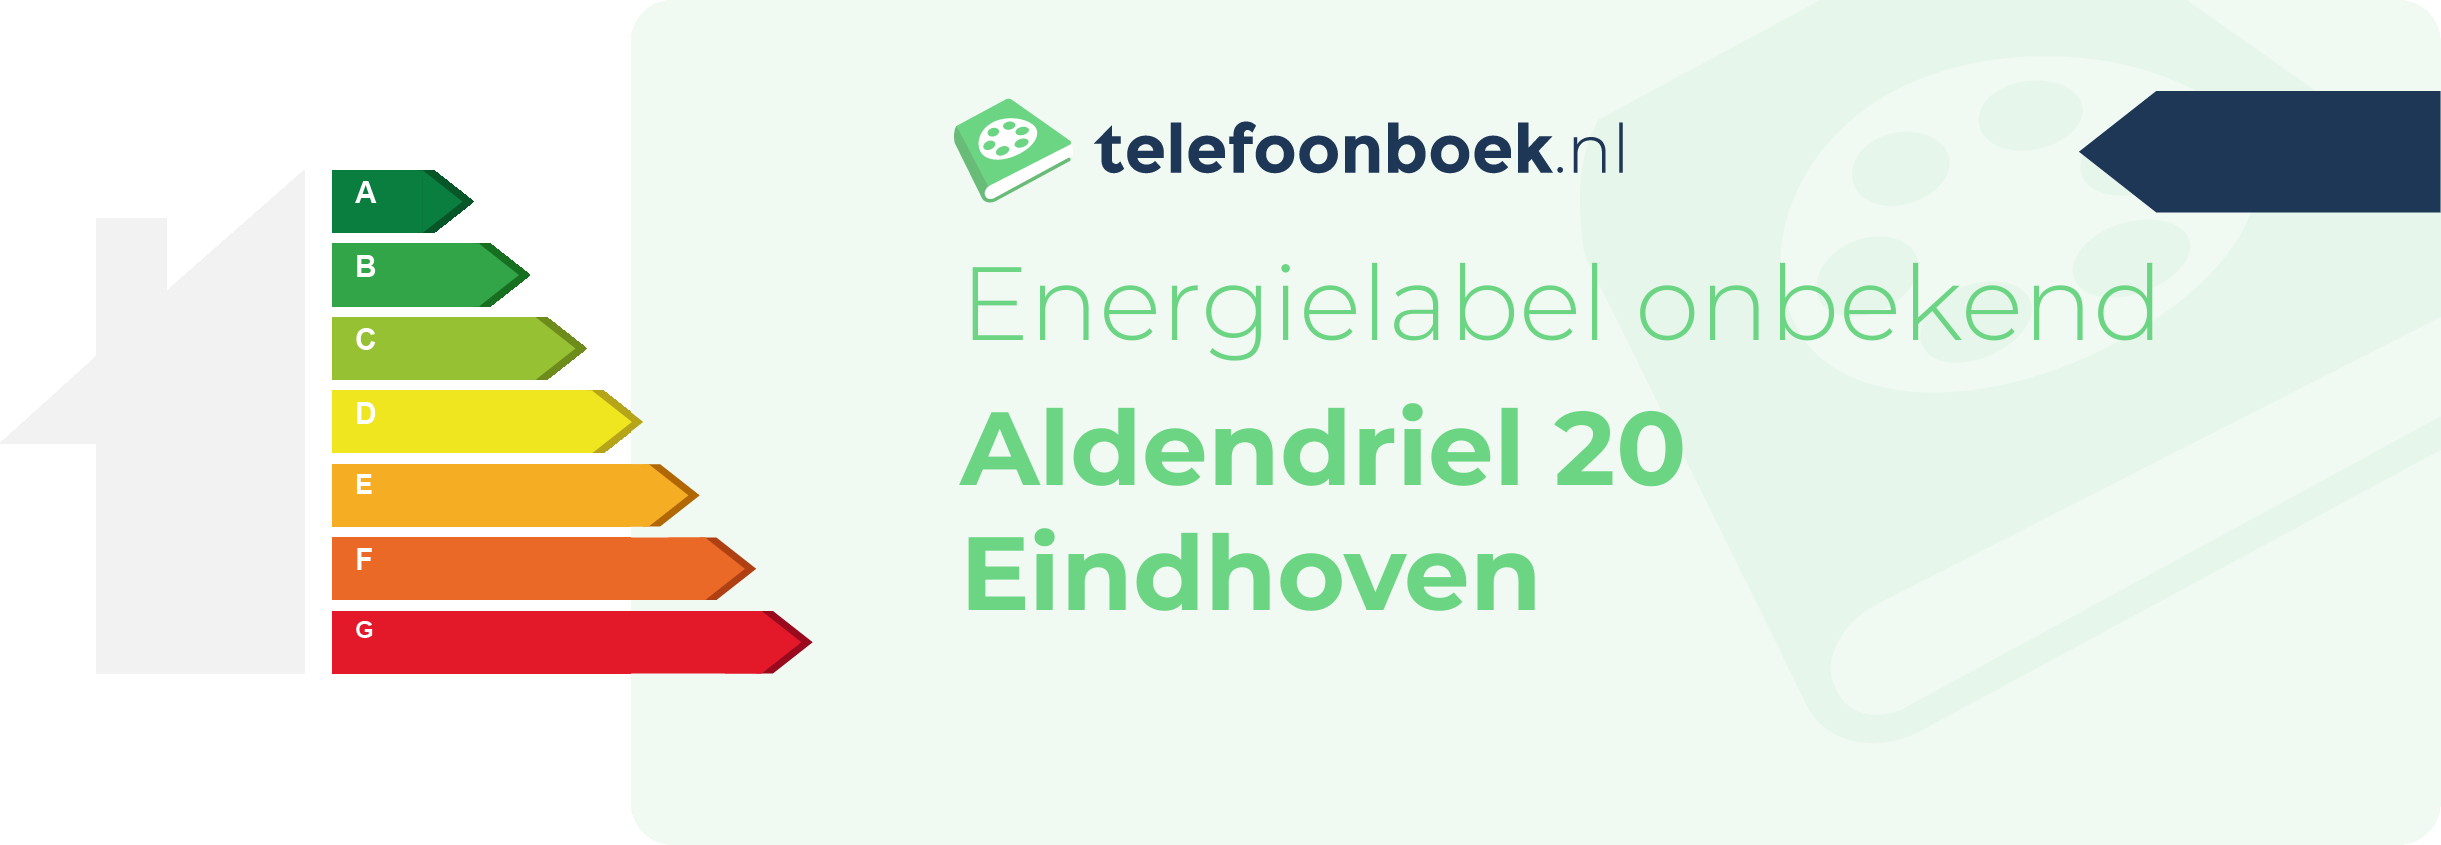 Energielabel Aldendriel 20 Eindhoven